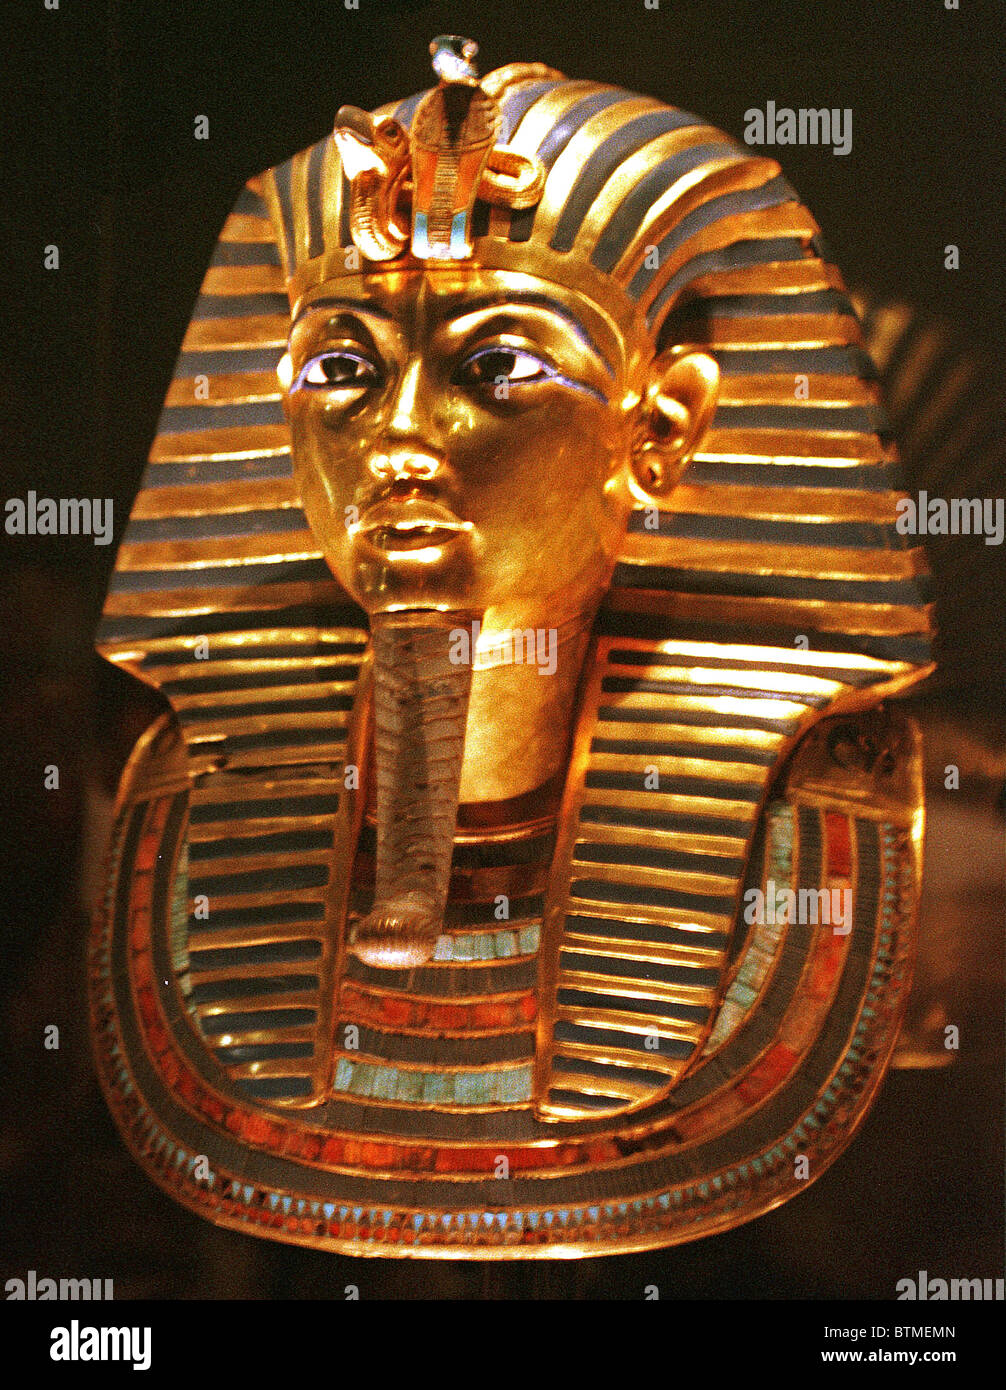 La máscara mortuoria del faraón egipcio Tutankamón está hecha de vidrio  coloreado con incrustaciones de oro y piedras semipreciosas. El material de  la imagen capturada en el archivo de prensa Servicio de